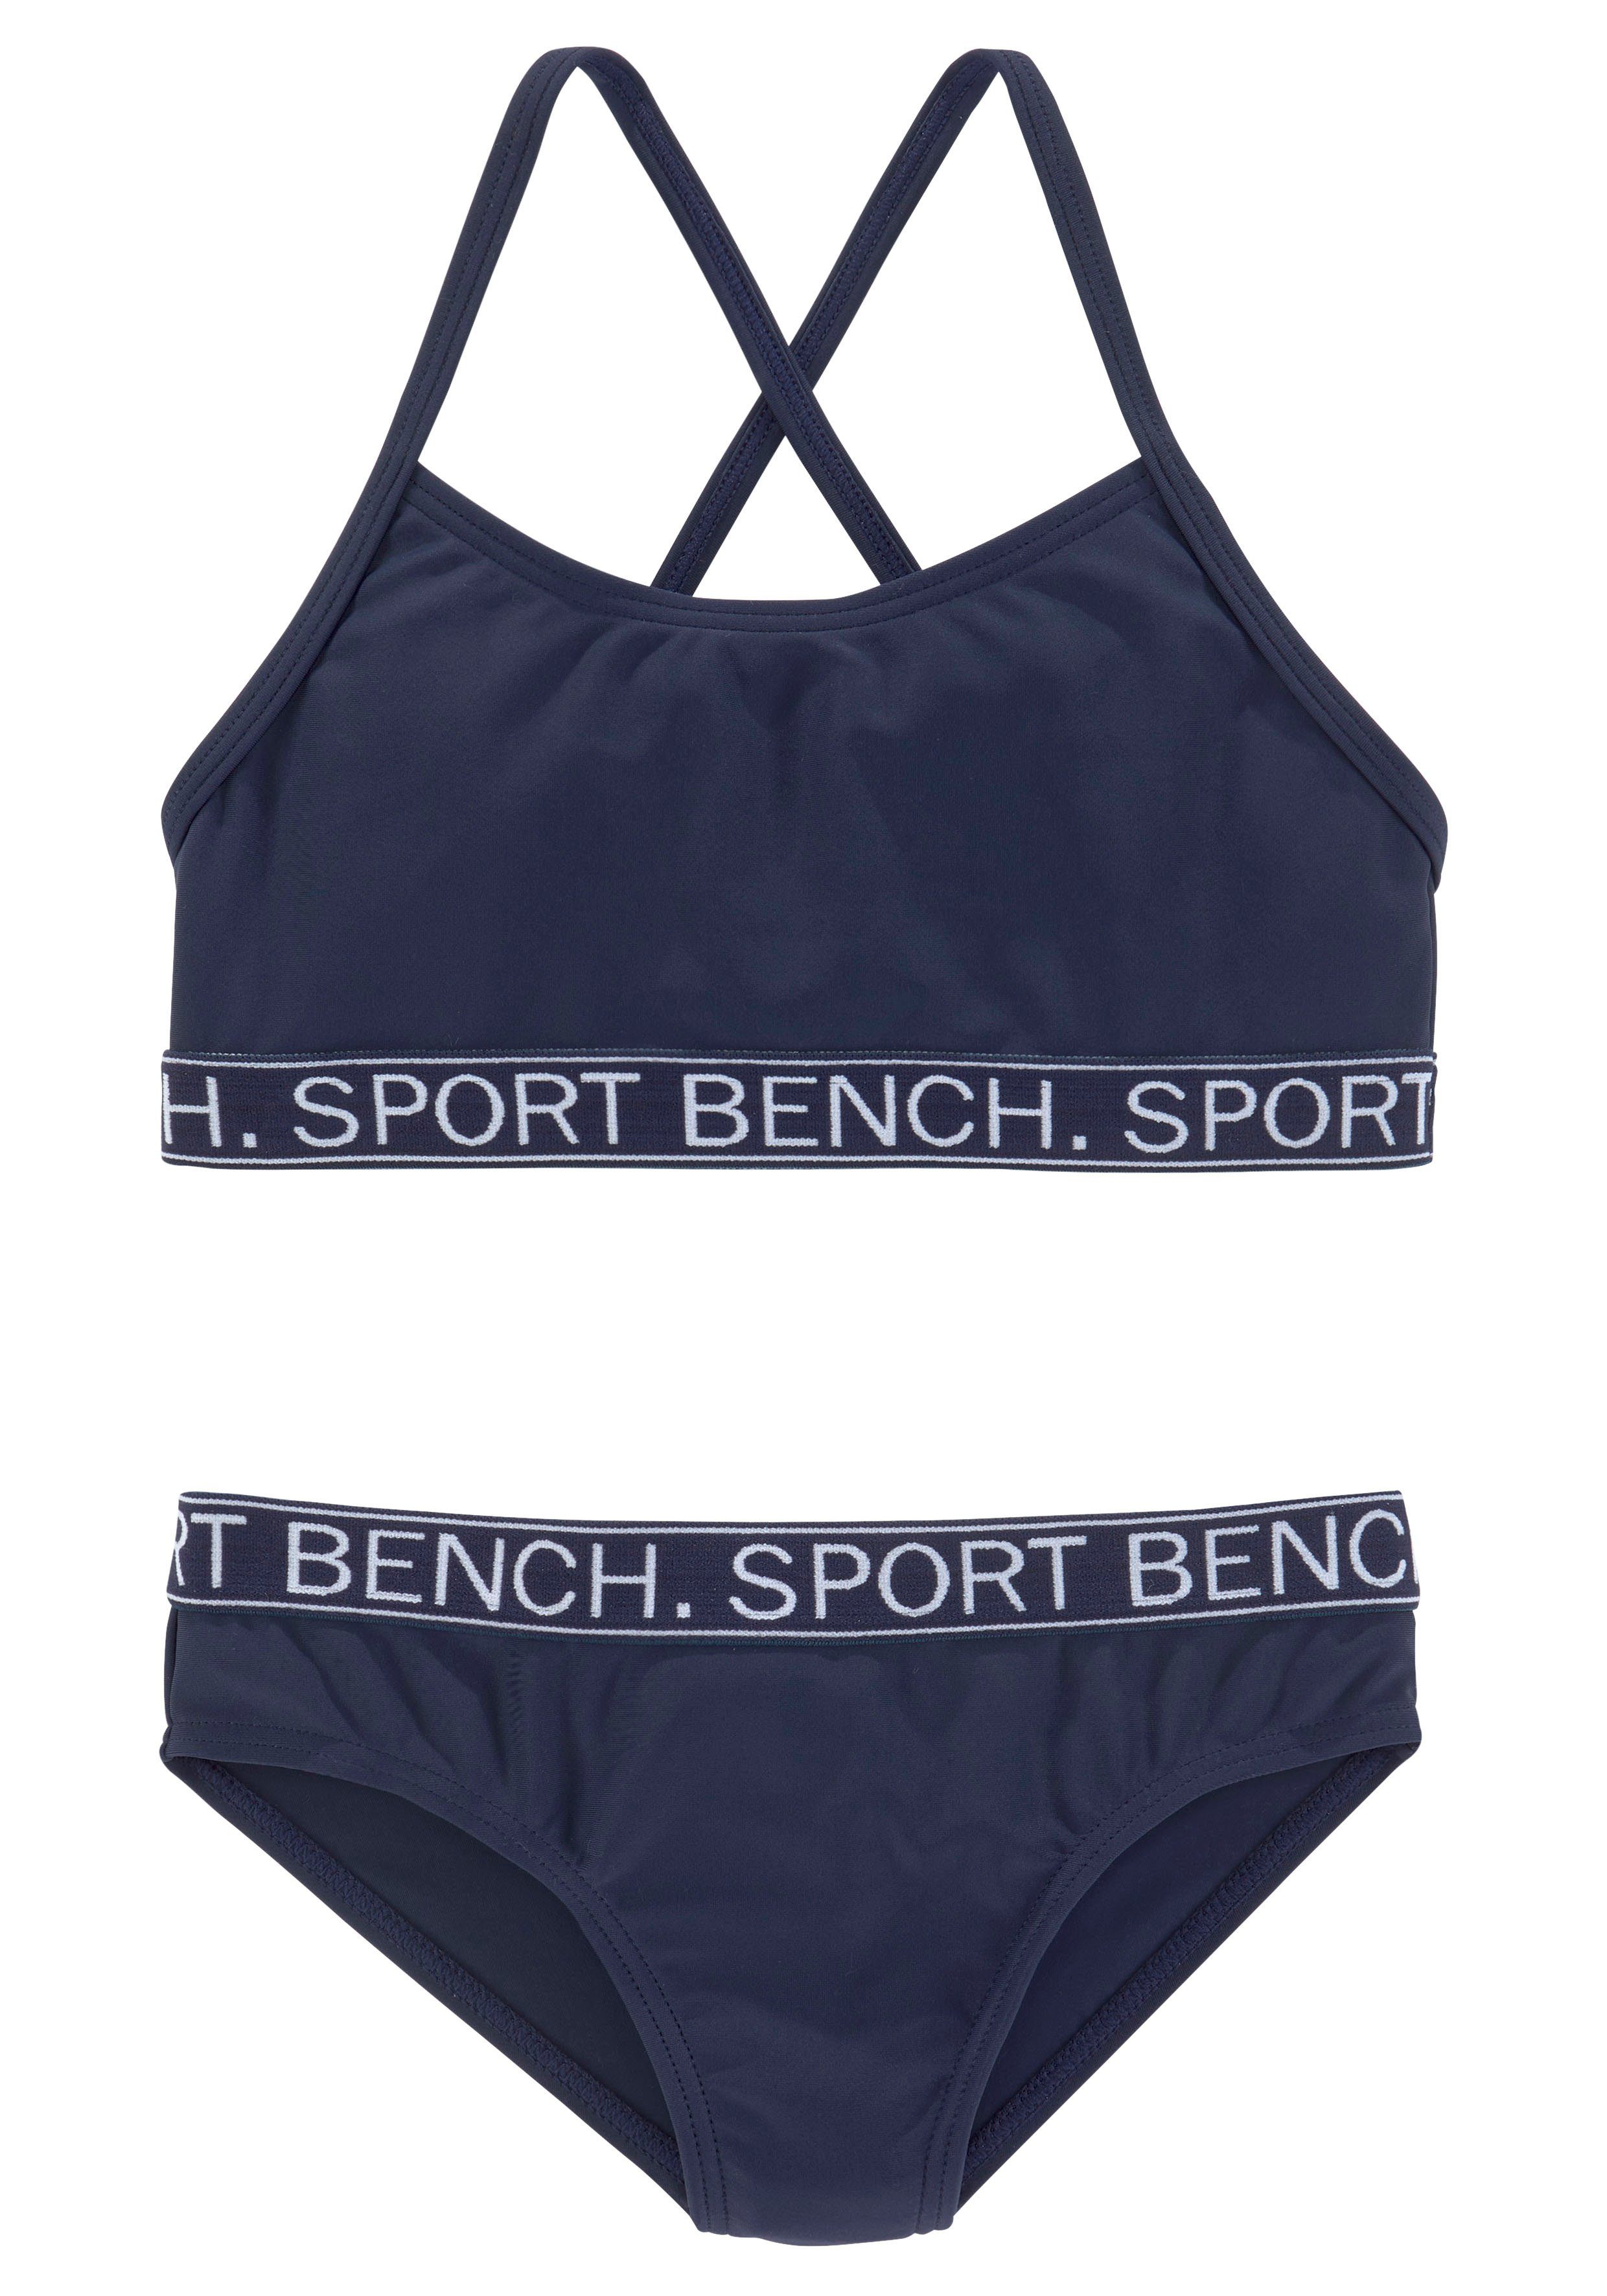 Design Yva in sportlichem Bustier-Bikini und Kids Farben Bench.